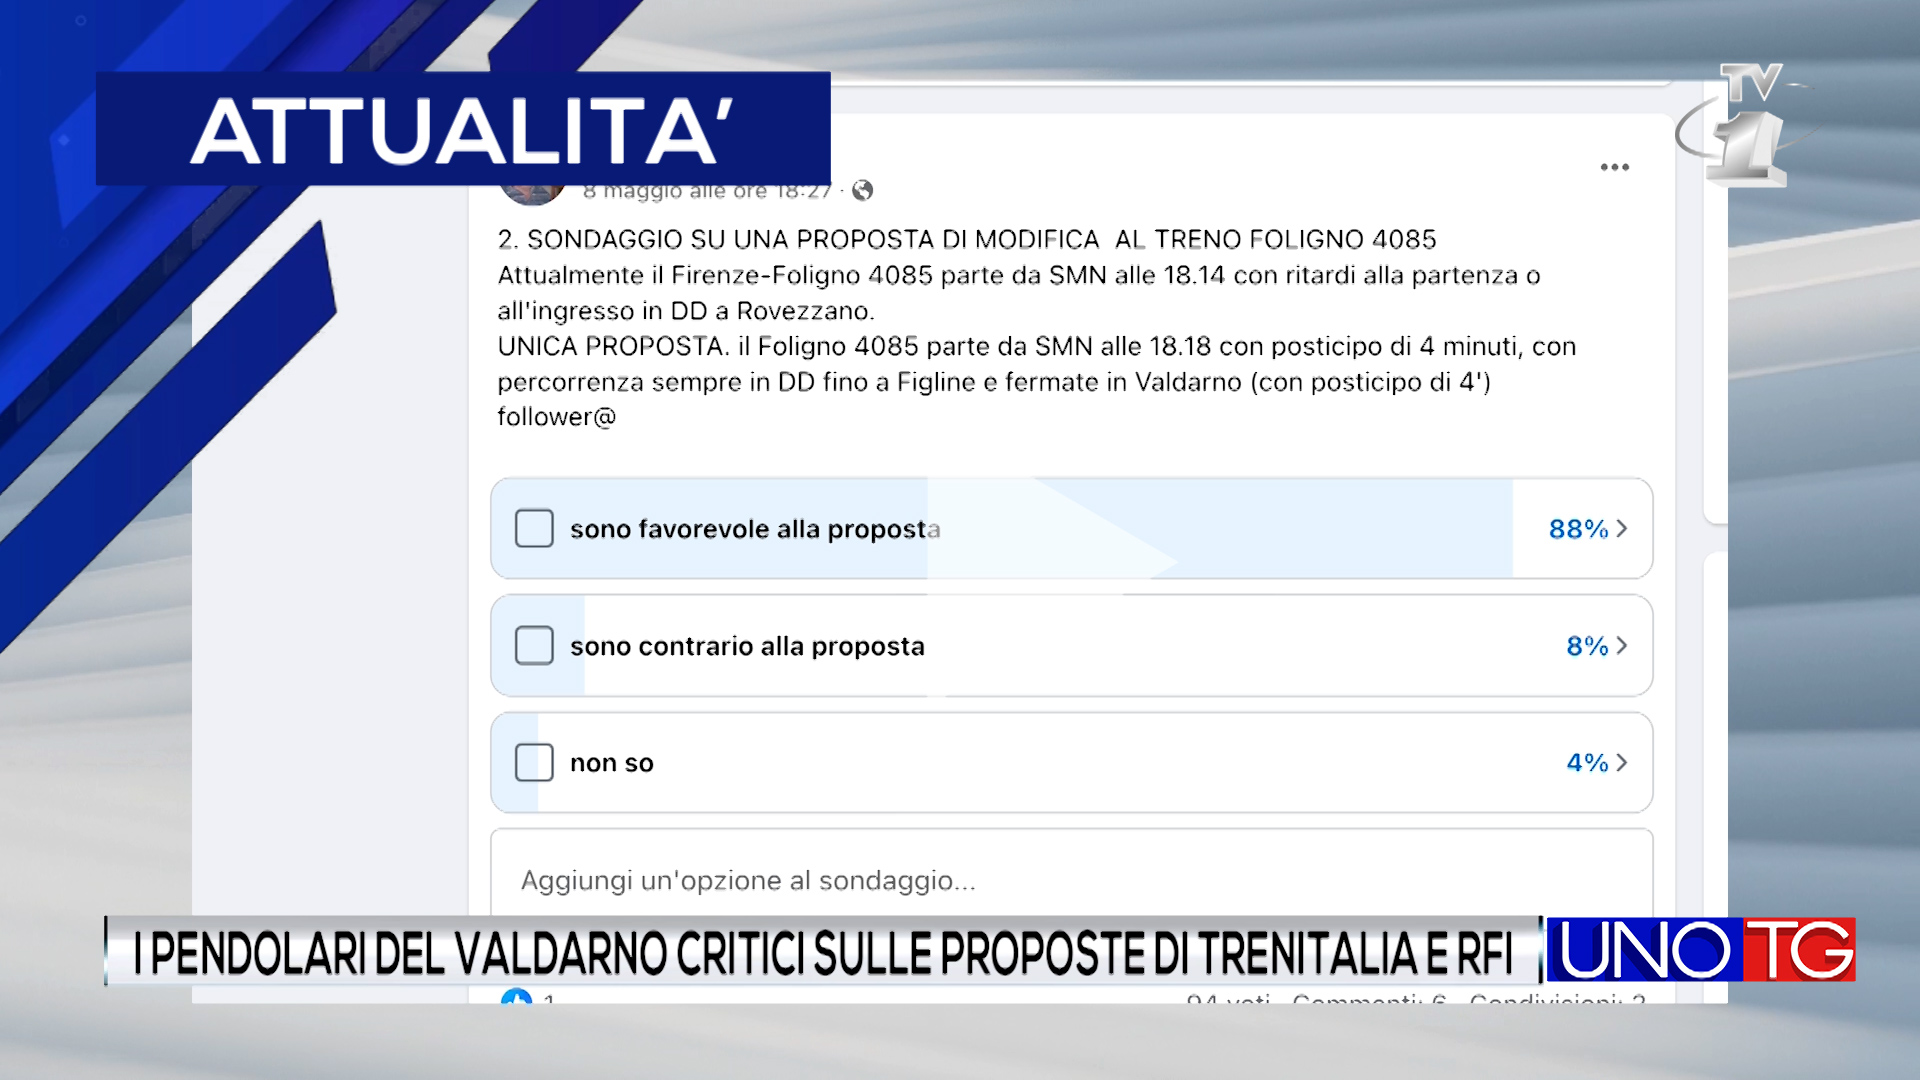 I pendolari del Valdarno critici sulle proposte di Trenitalia e RFI